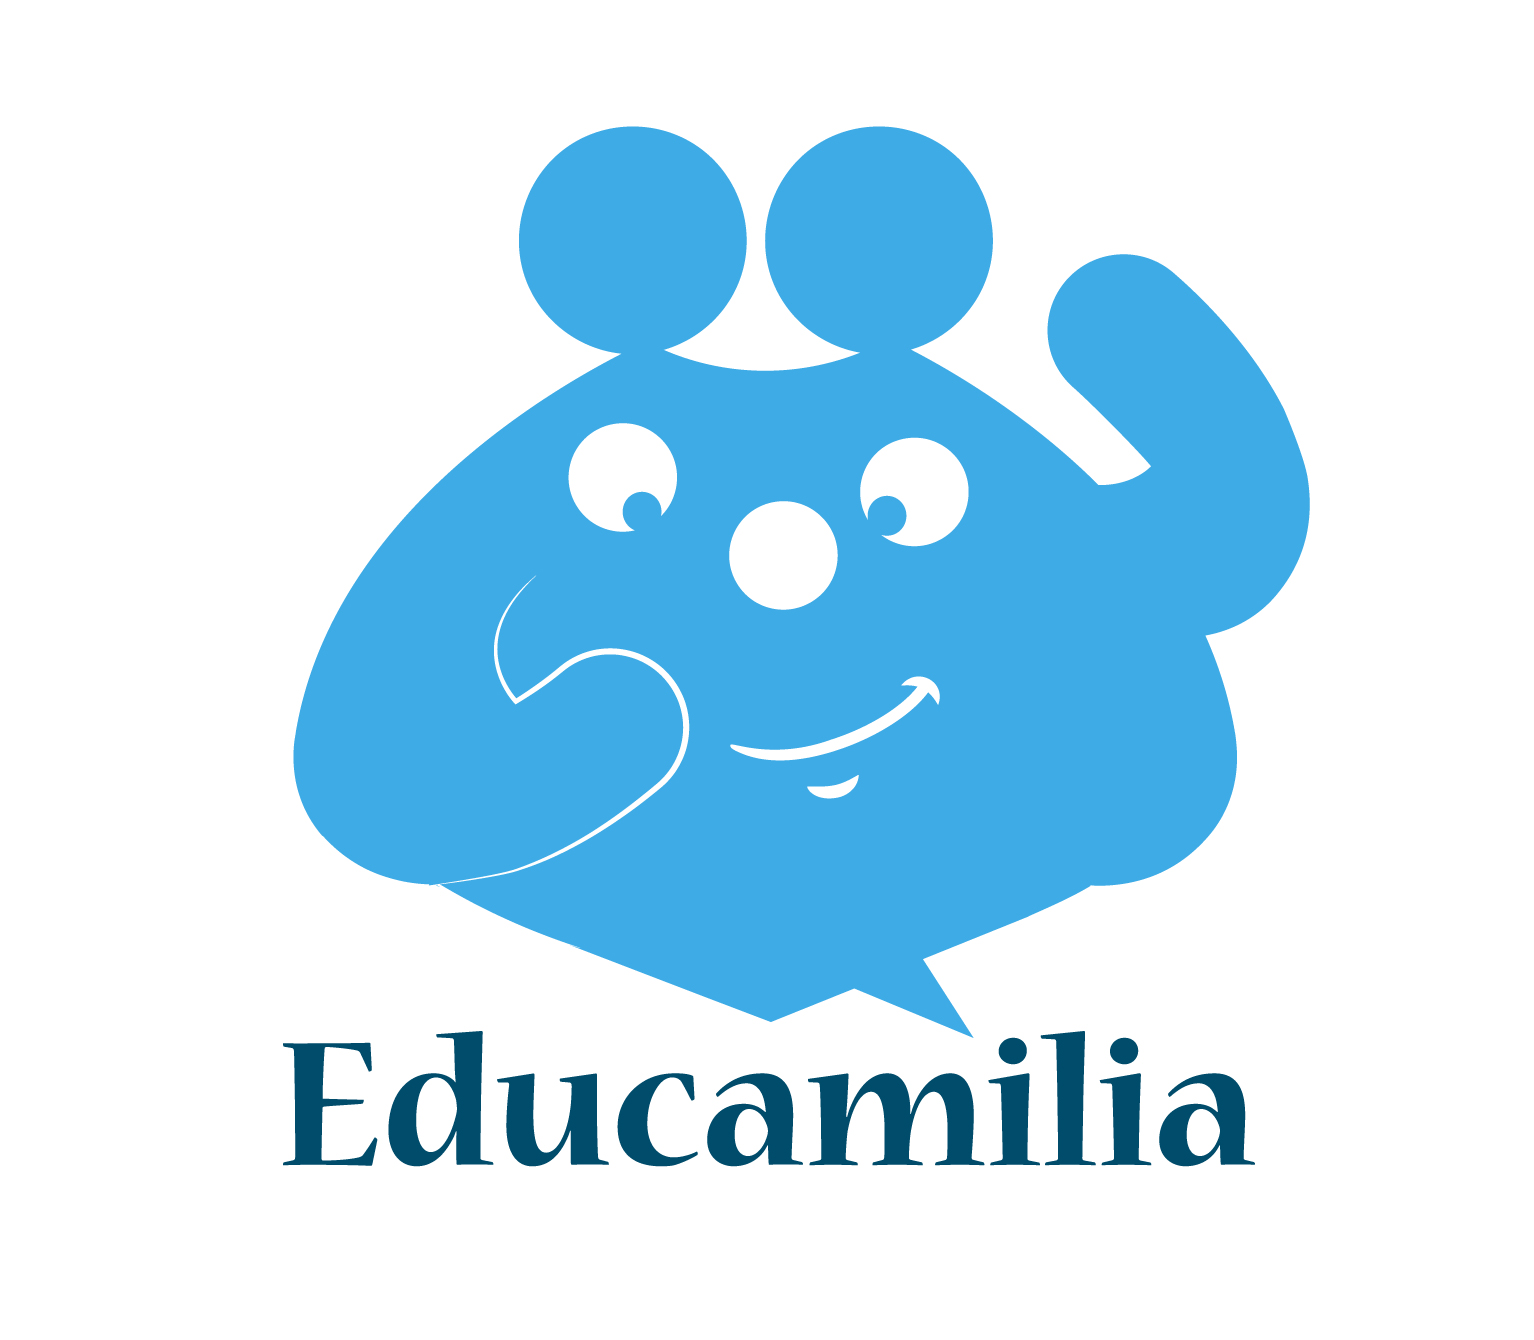 www.educamilia.org